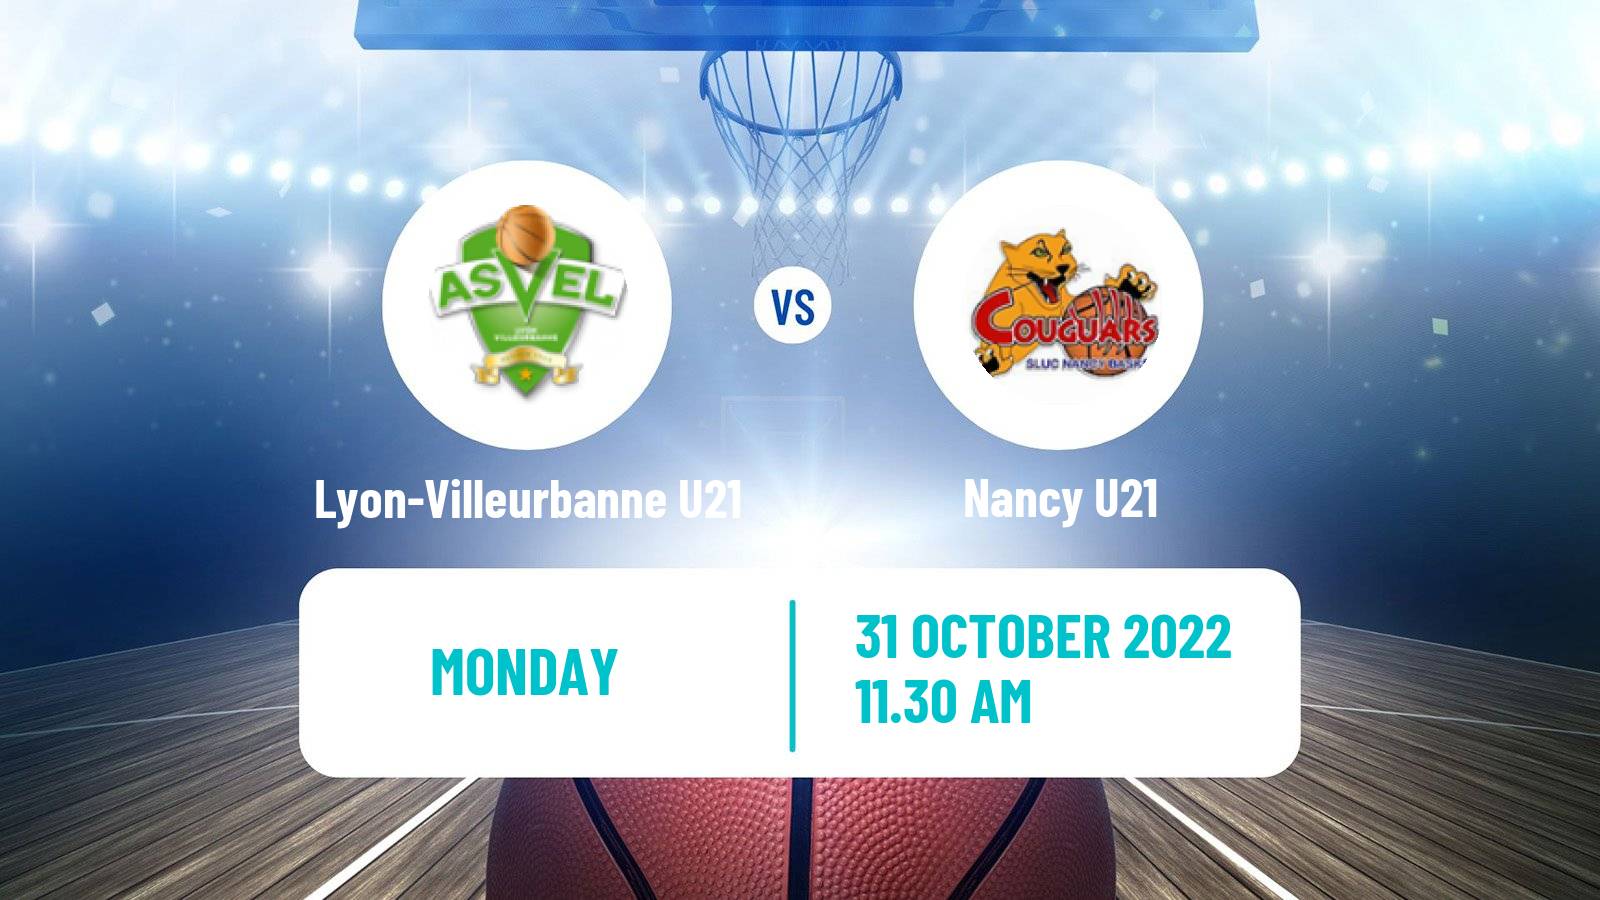 Basketball French Espoirs U21 Basketball Lyon-Villeurbanne U21 - Nancy U21